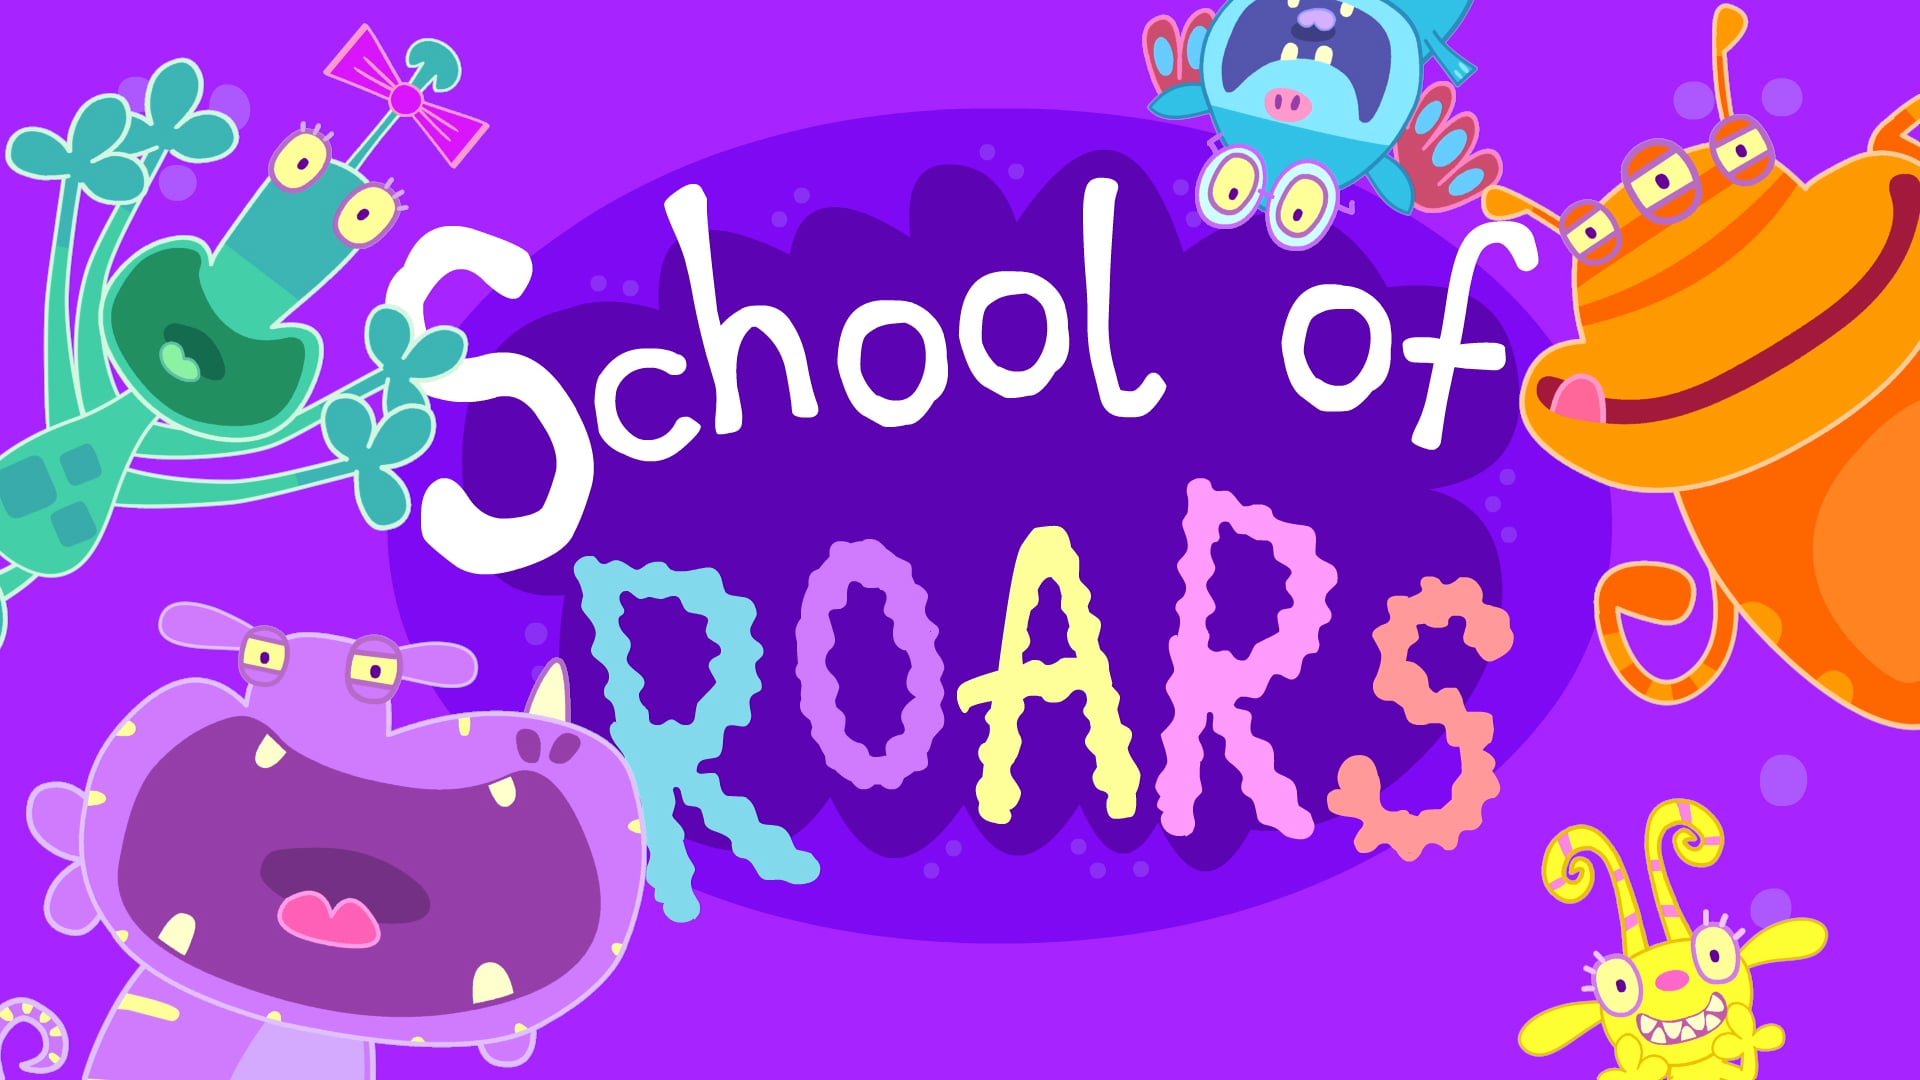 School Of Roars Trailer on Vimeo